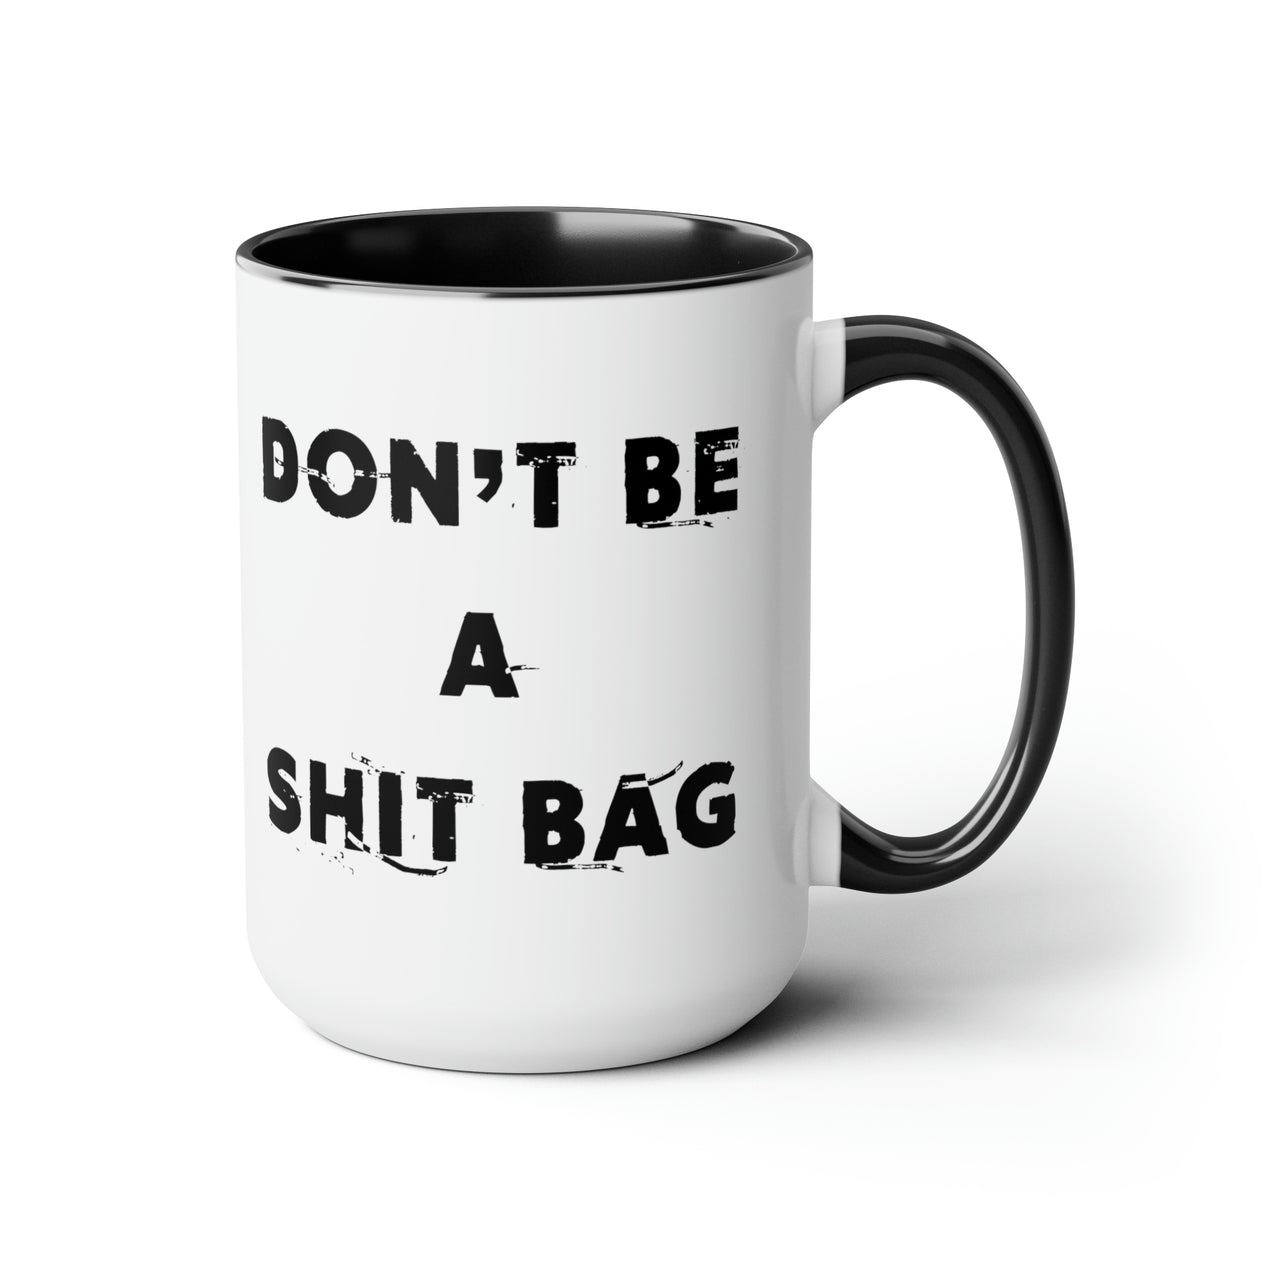 Shit Bag Mug